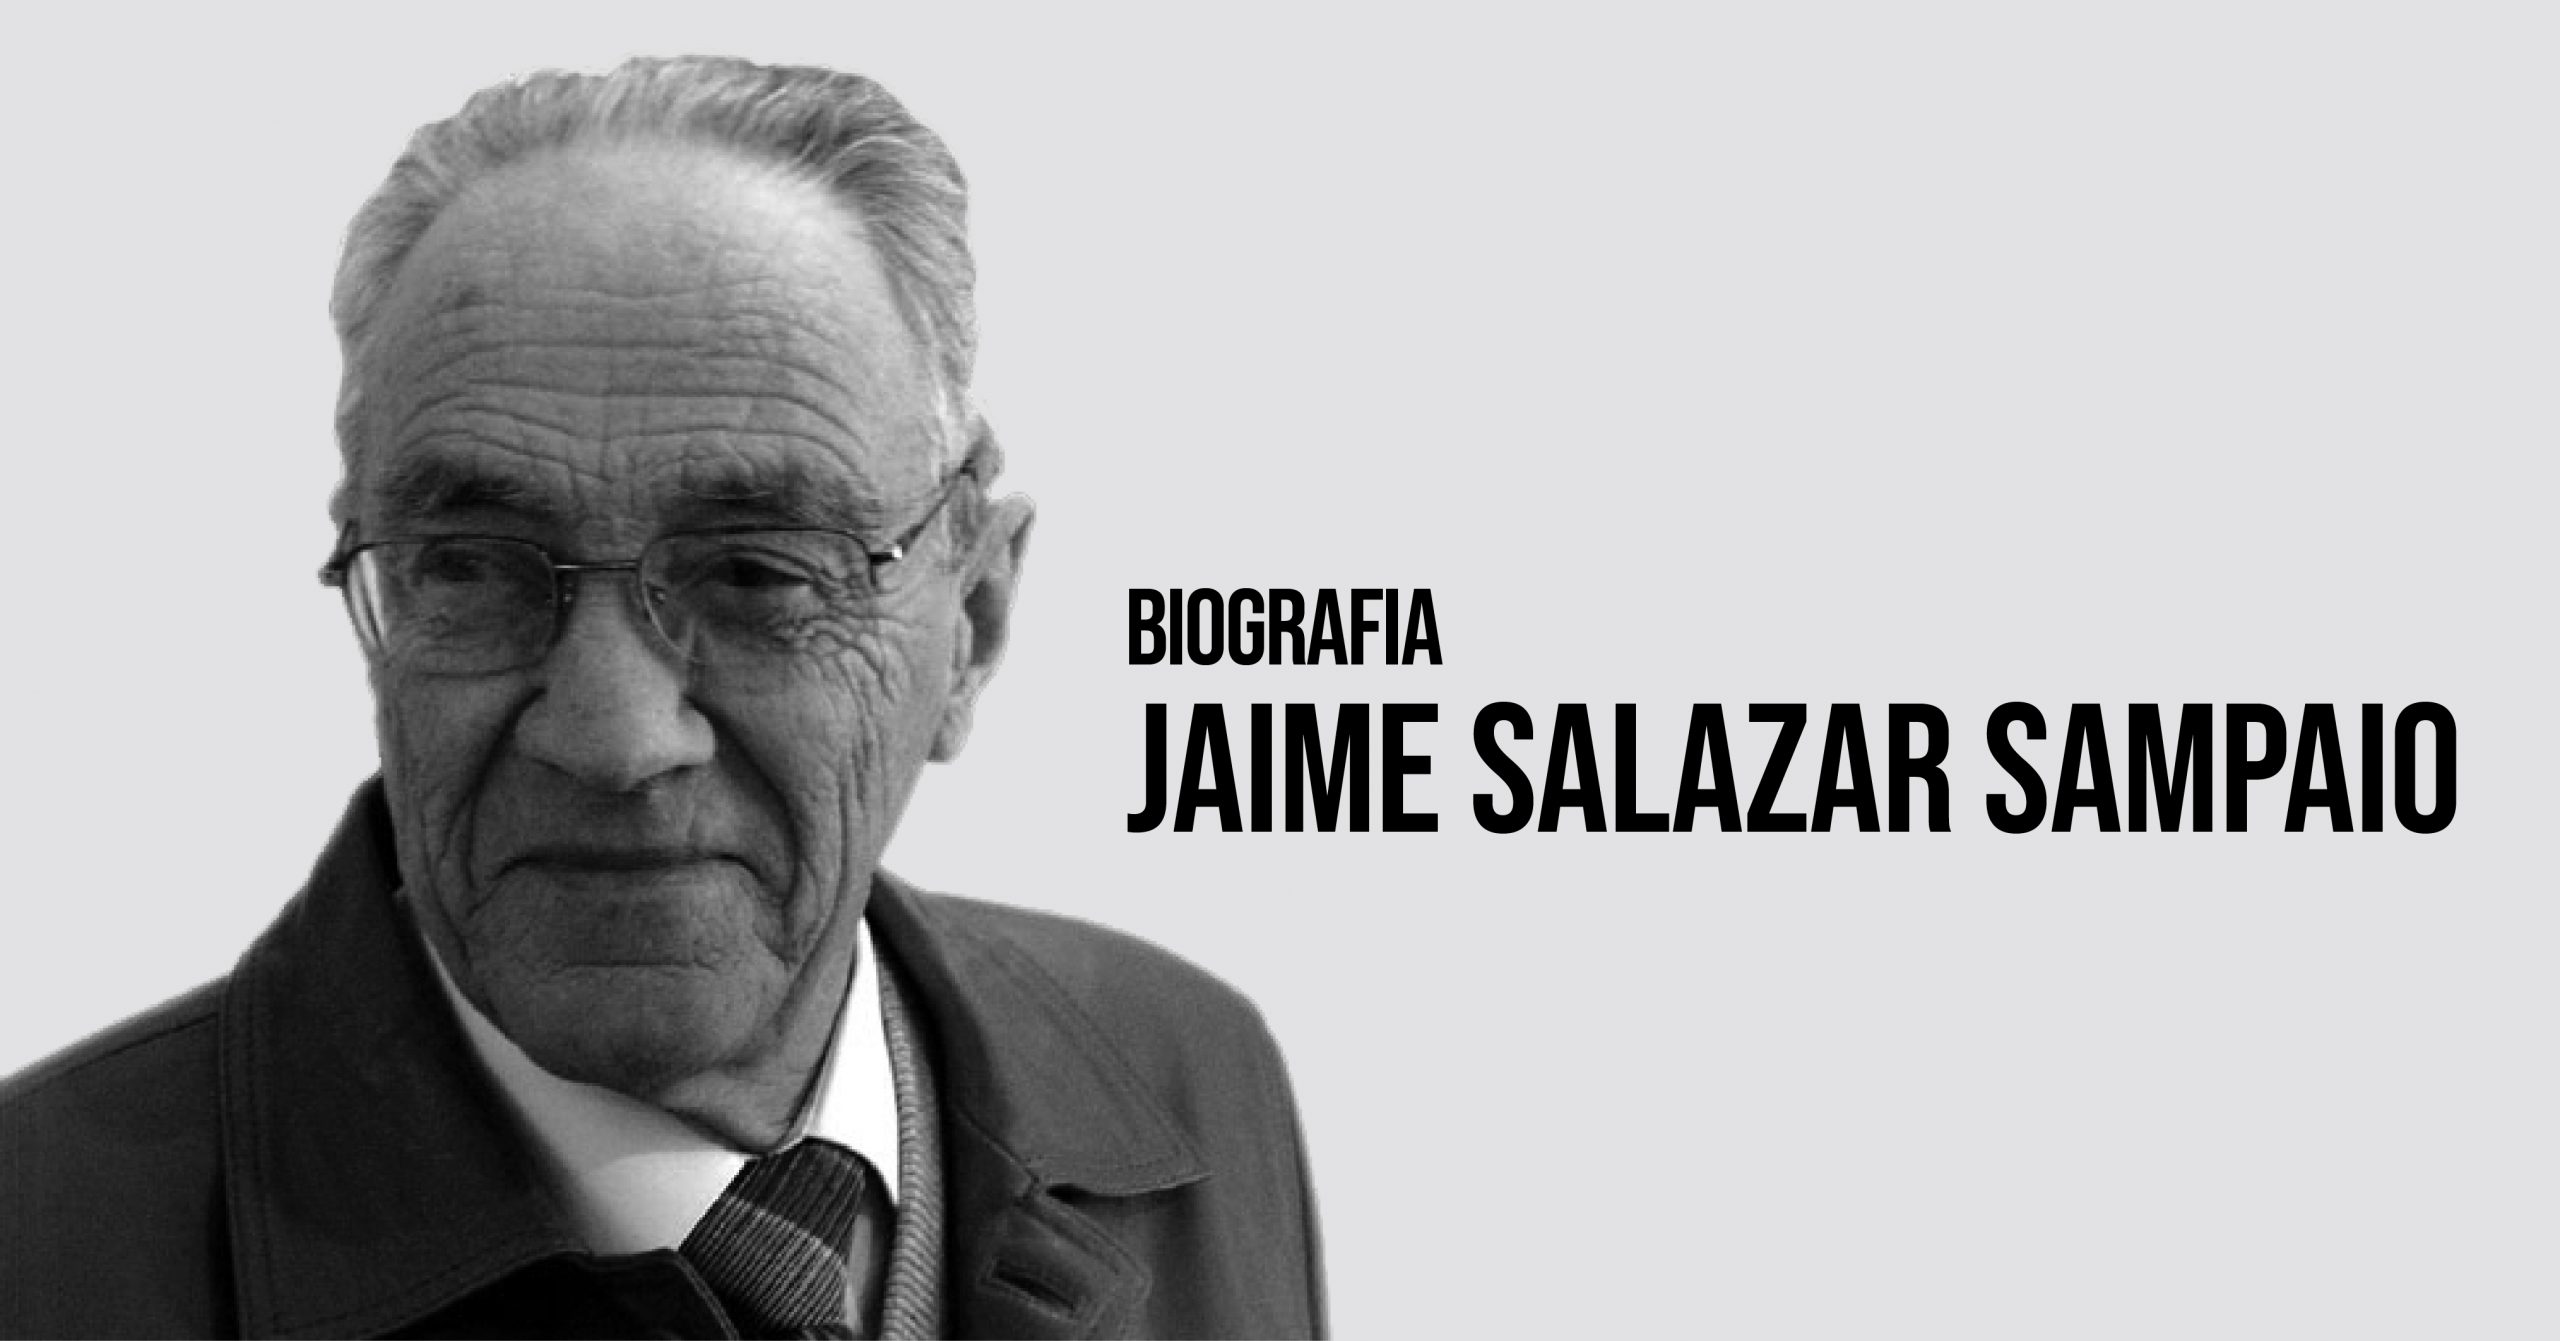 Jaime Salazar Sampaio